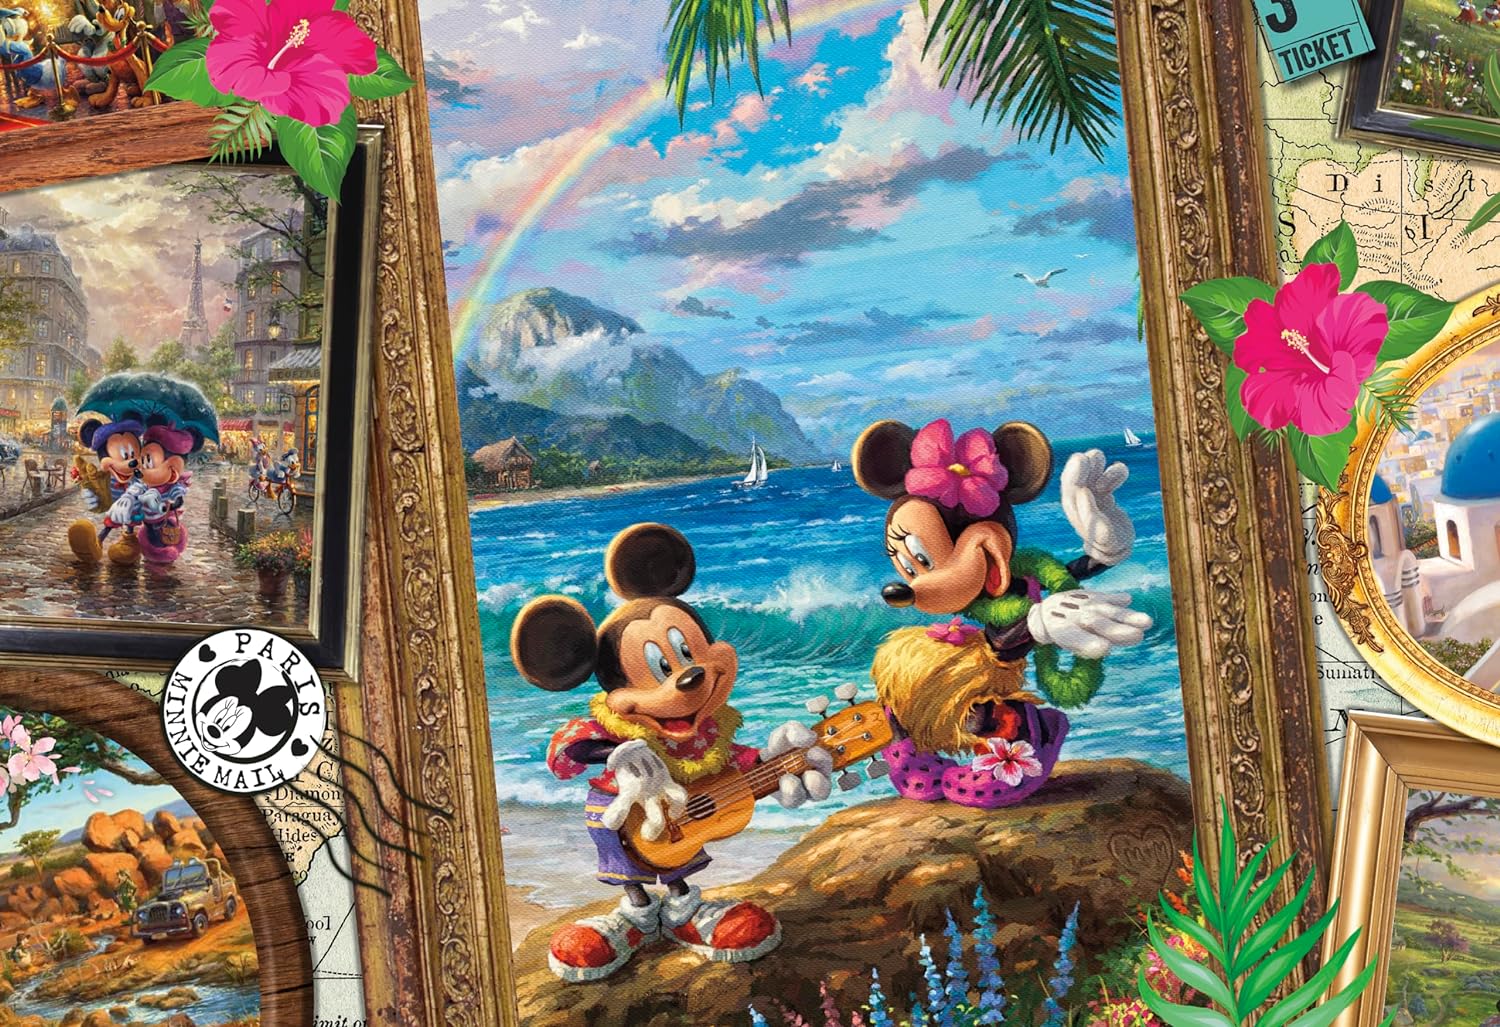 Puzzle 2000 Piezas | Disney Aventuras de Mickey y Minnie Ceaco 